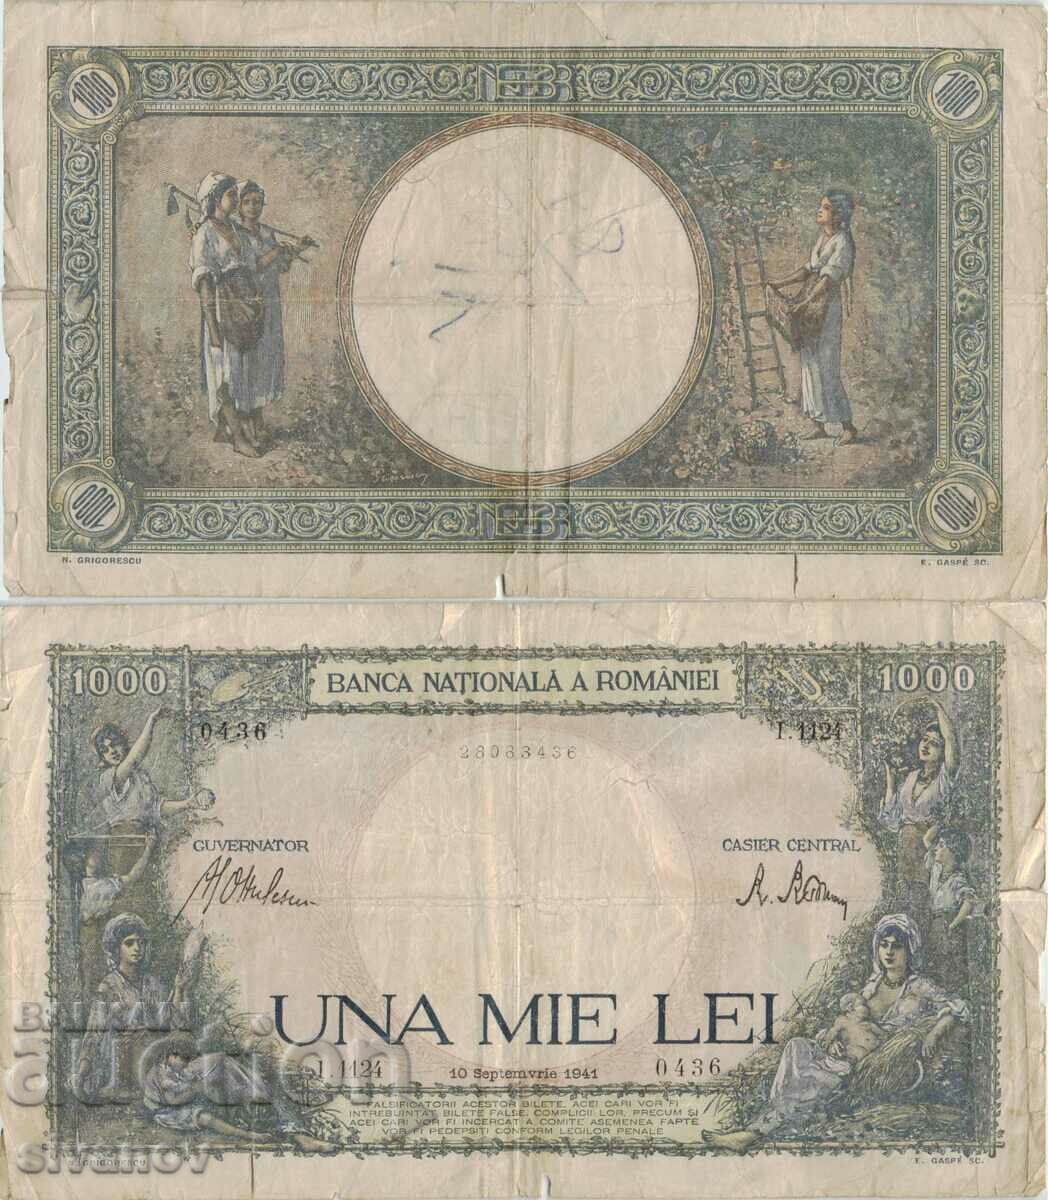 Romania 1000 lei 1941 year #4848